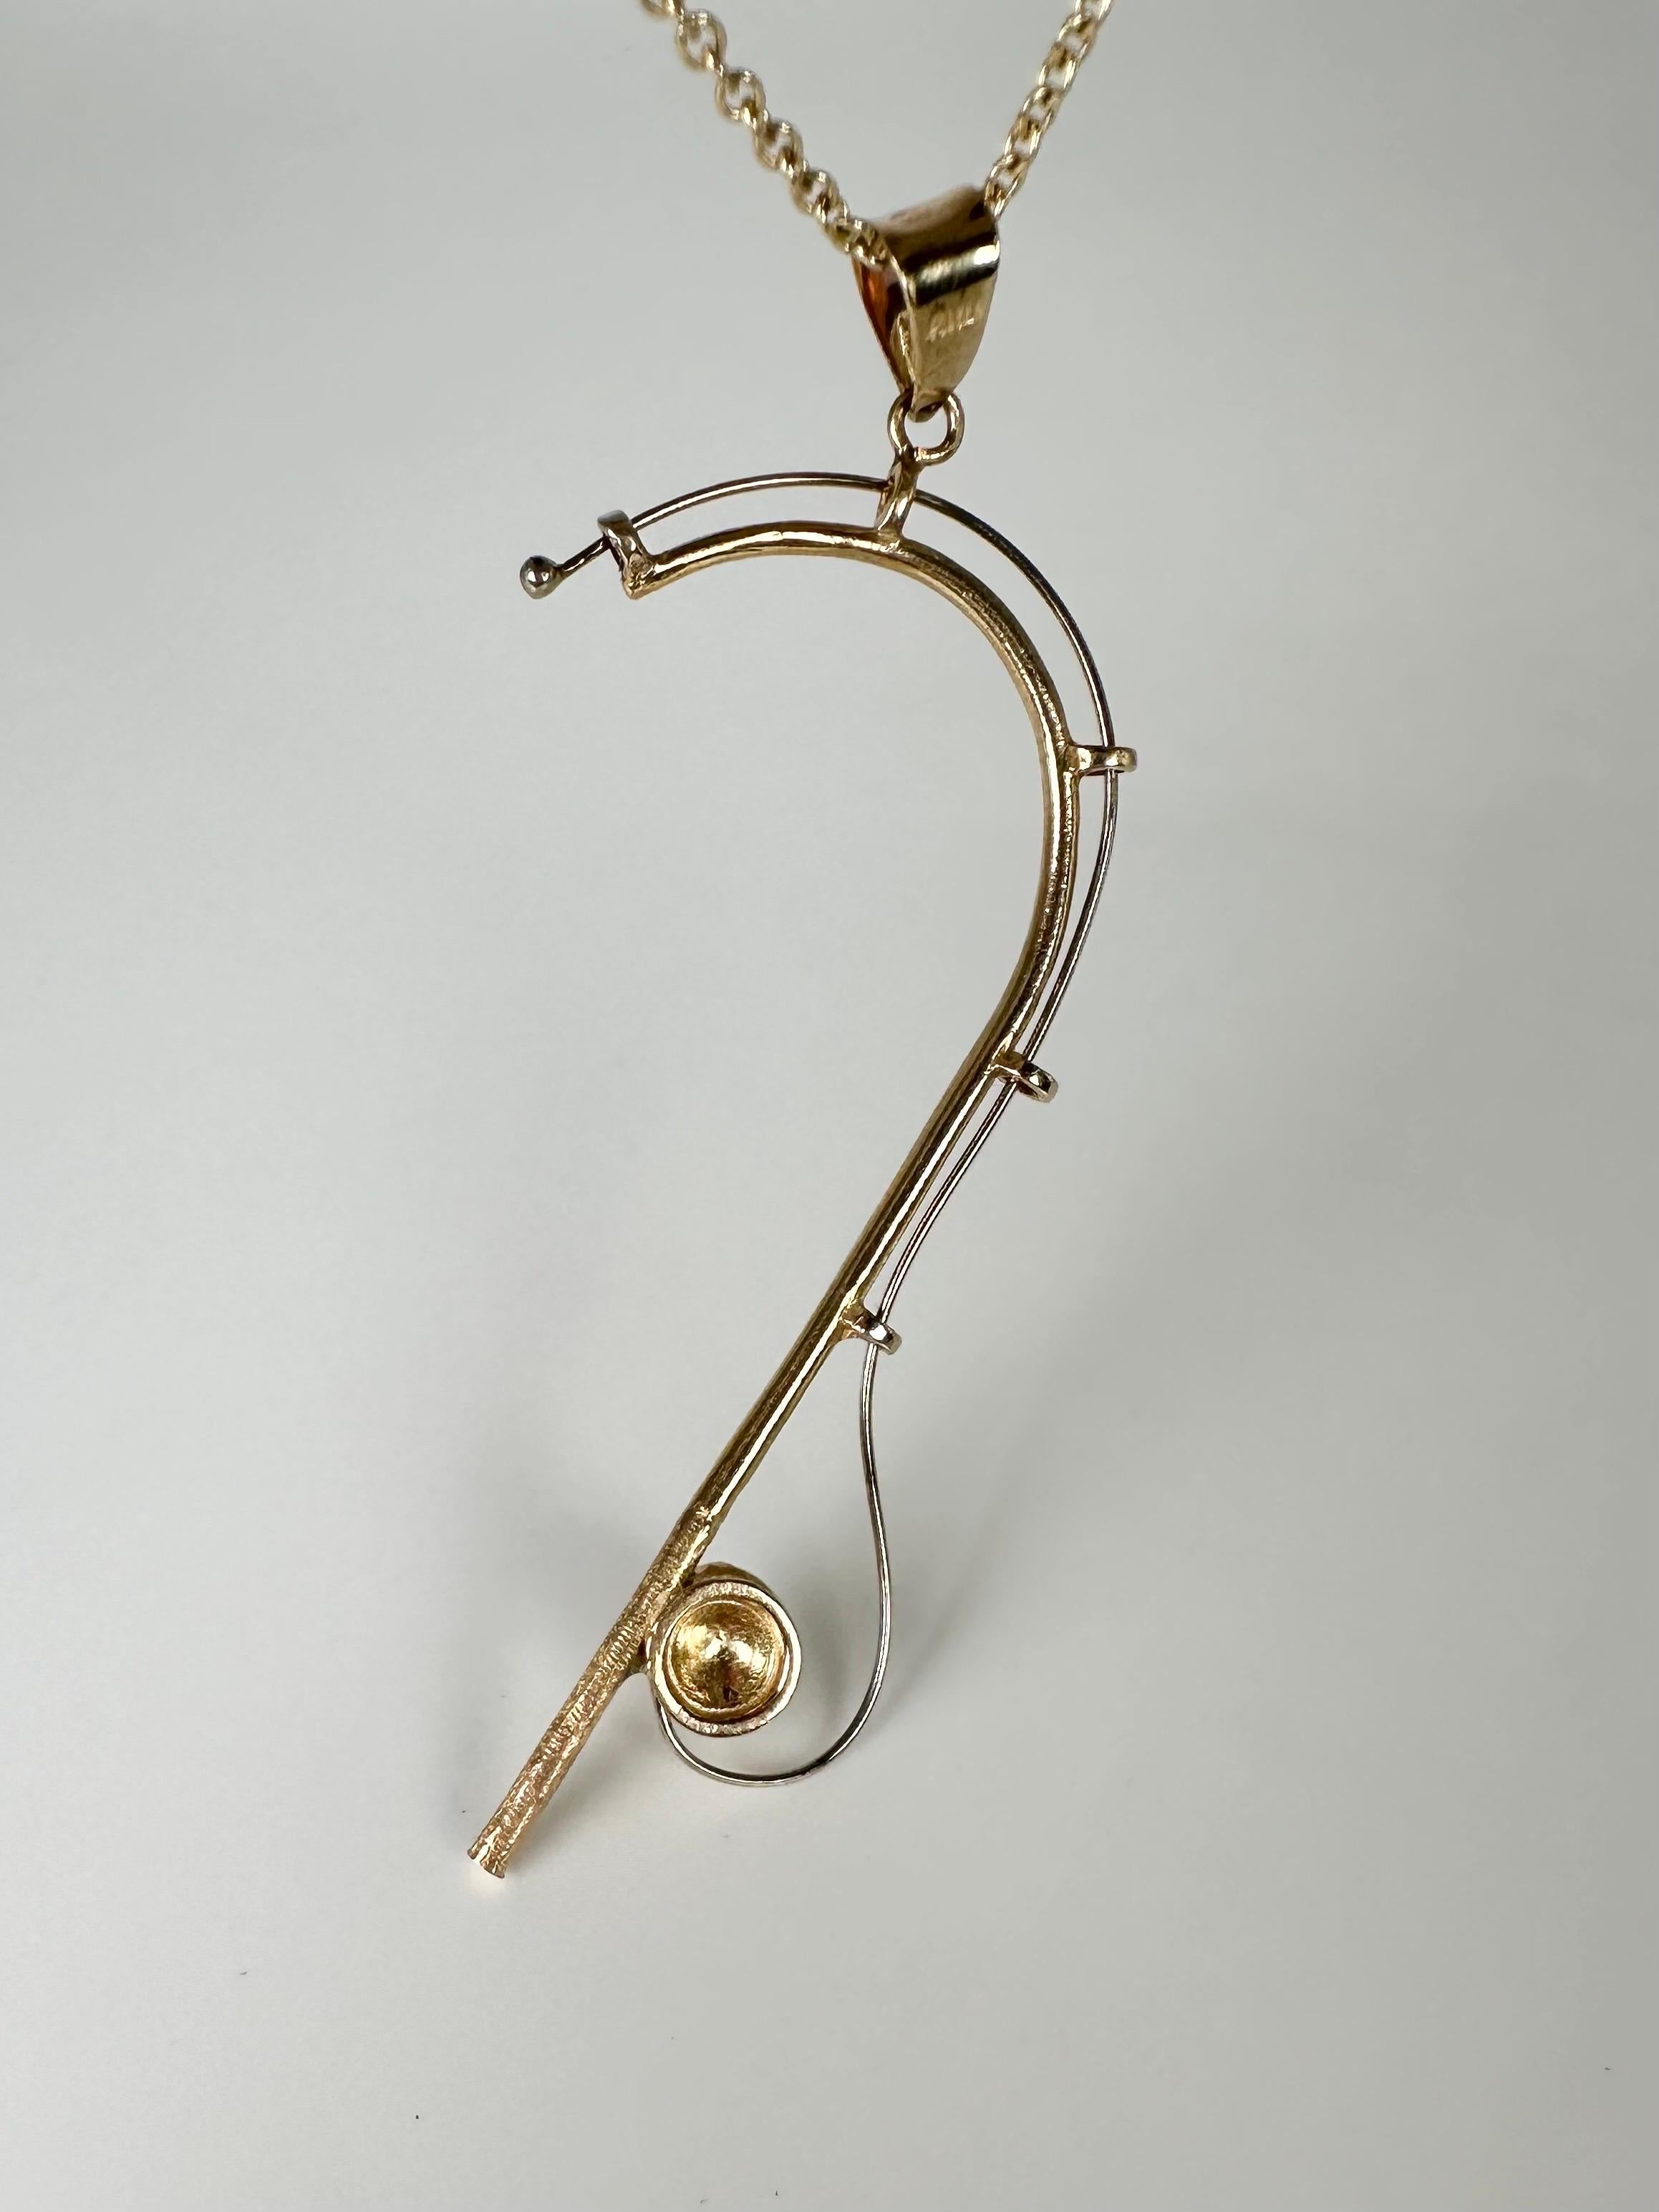 Sehr einzigartige Angelruten-Anhänger-Halskette, sehr groß und dennoch bequem und kunstvoll! Nur ein einziges Exemplar, ein Anhänger nach Maß für die Liebhaber der Fischerei!
GOLD: 14KT Gold
Artikel Nr.: 435-00060

WAS SIE BEI STAMPAR JEWELERS